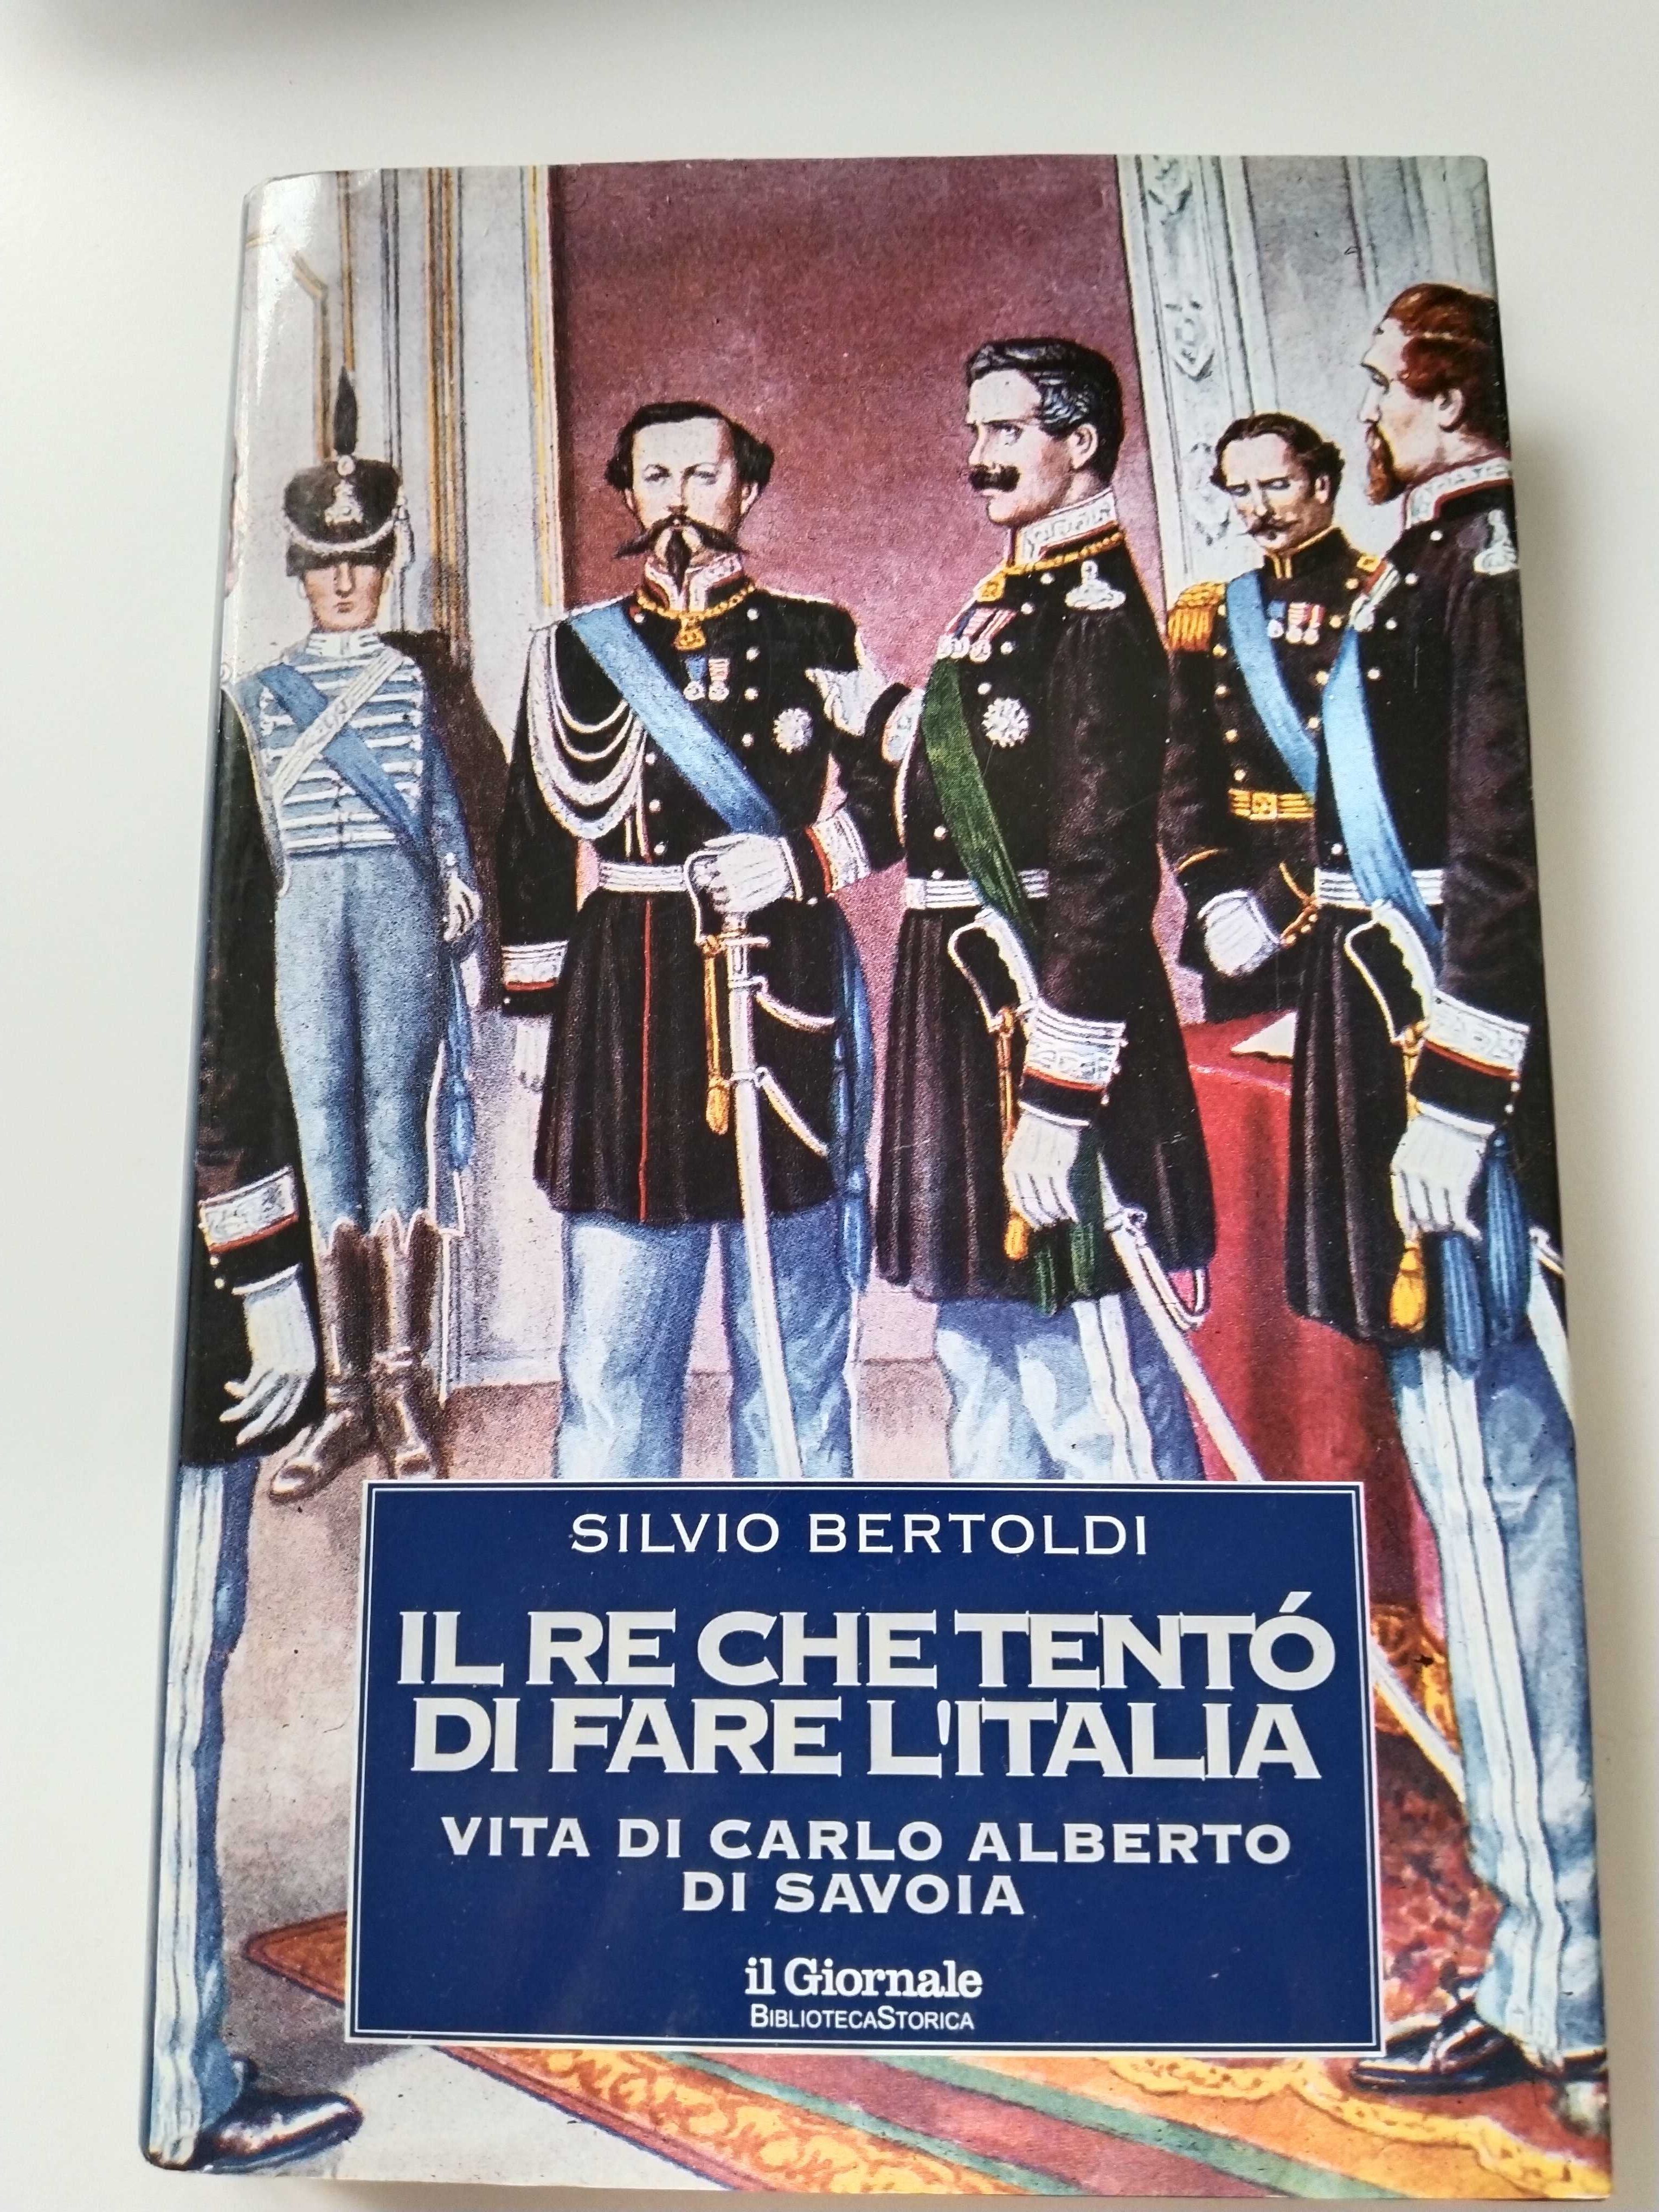 Książka po włosku. In italiano